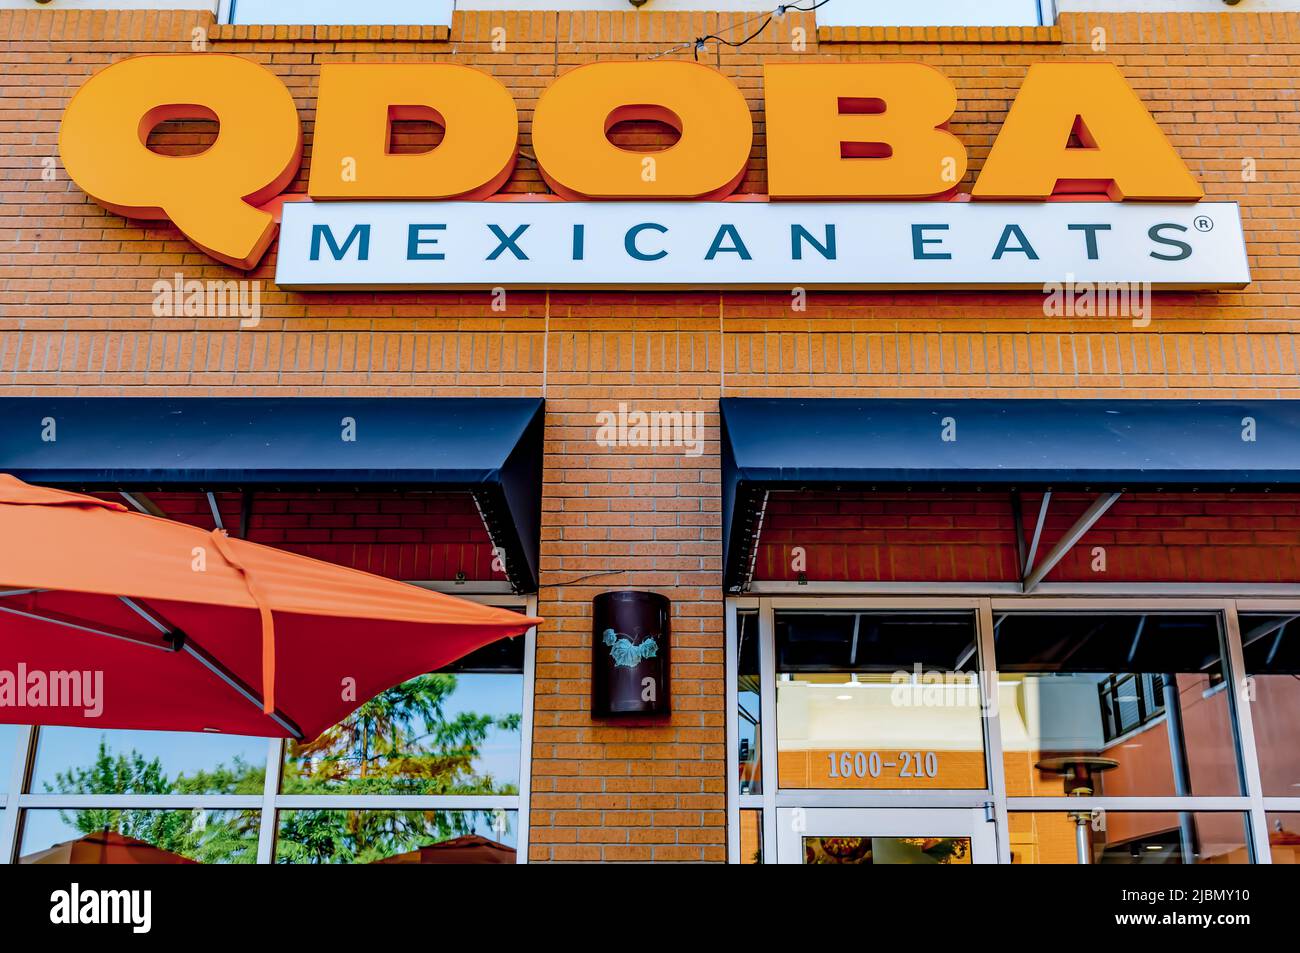 Qdoba Mexican isst die Außenfassade des Restaurants mit orangefarbenen Buchstaben über schwarzen Markisen, Glasfenstern und orangefarbenem Regenschirm. Stockfoto